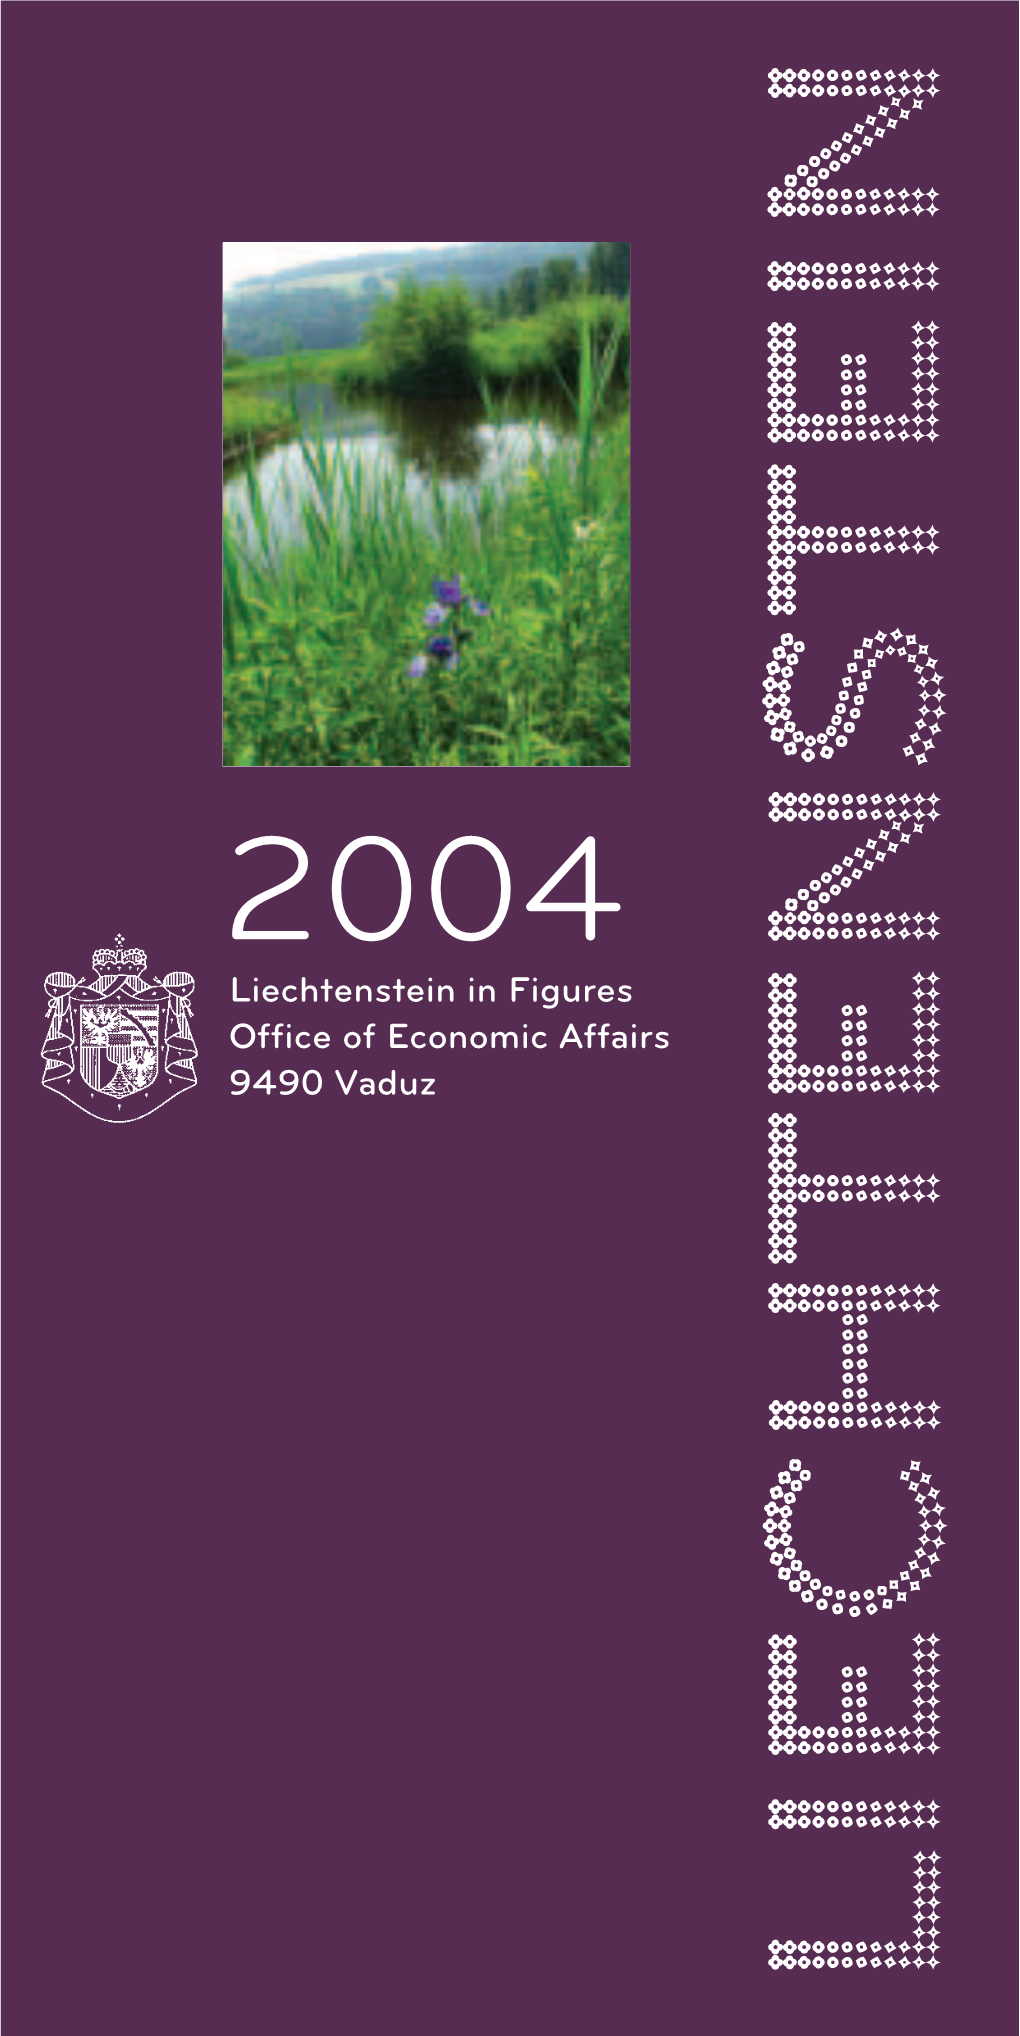 Liechtenstein in Figures Office of Economic Affairs 9490 Vaduz